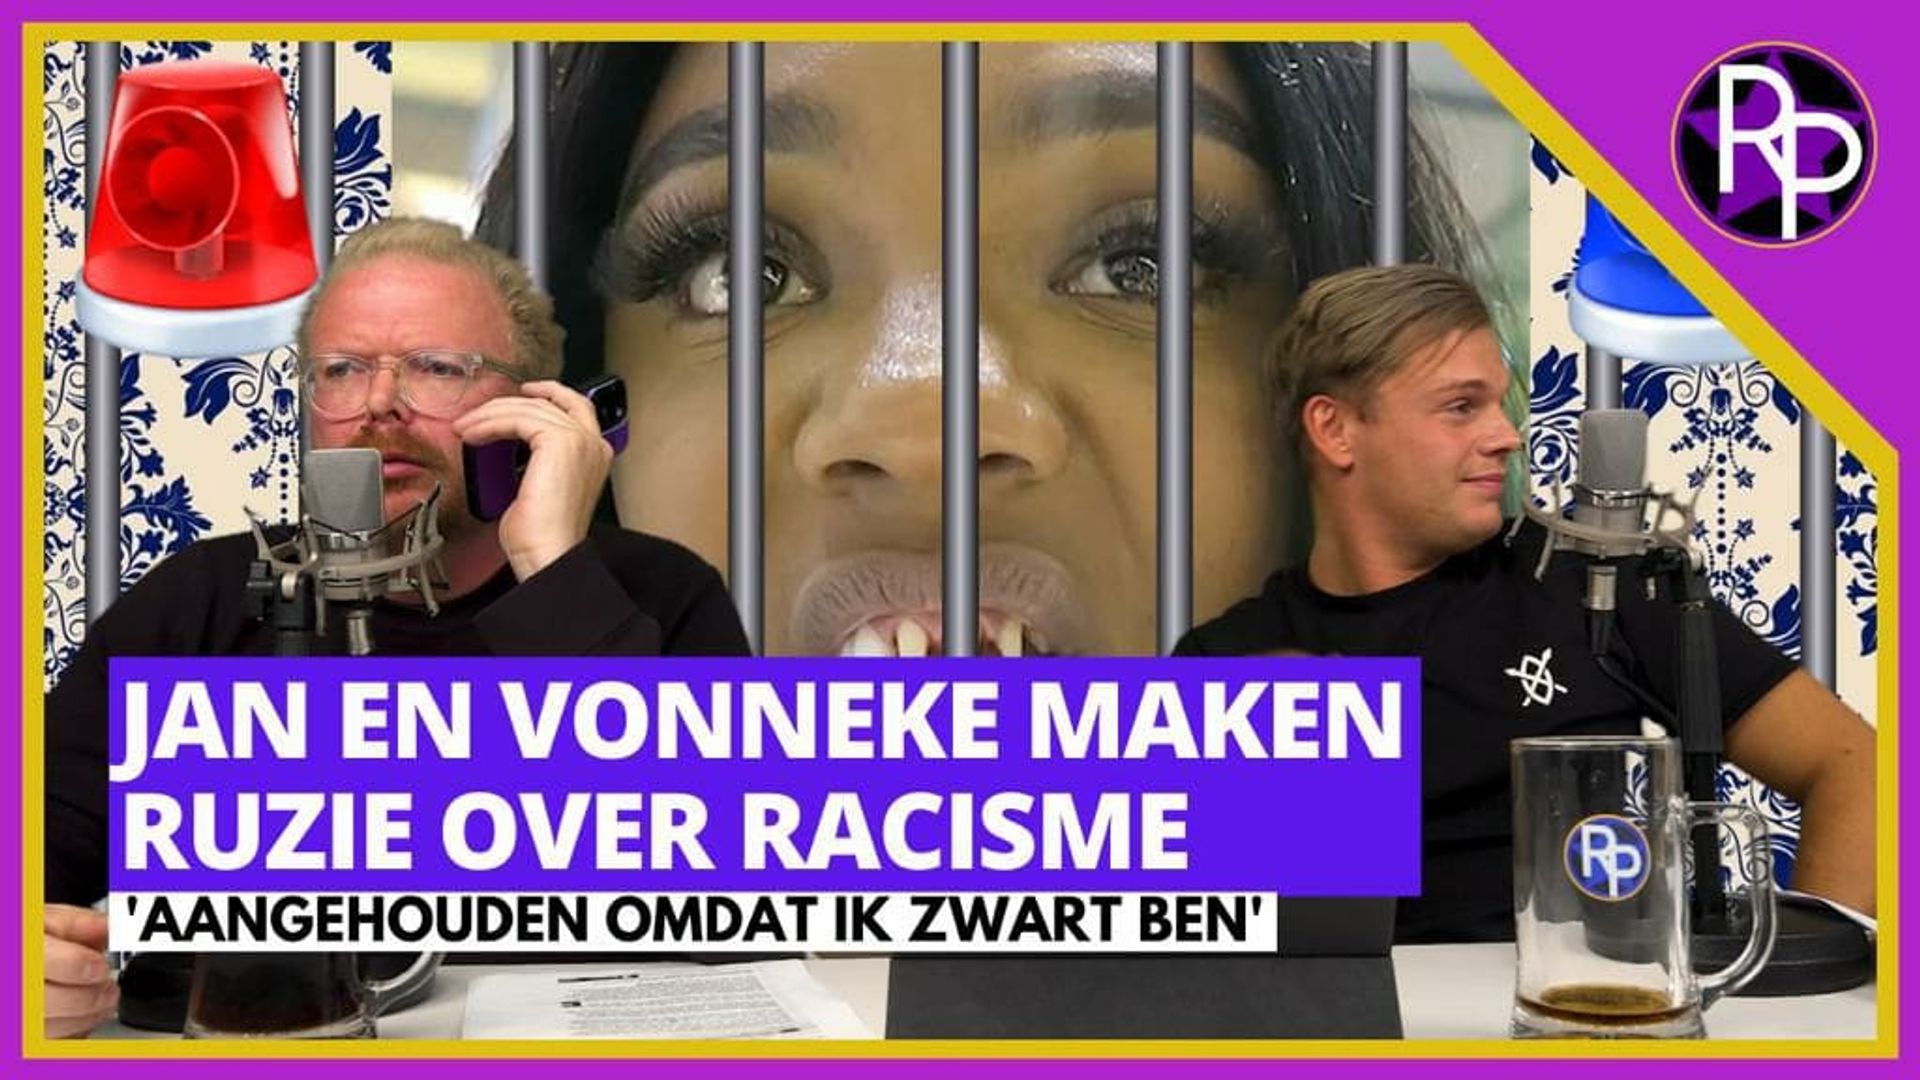 Jan Roos en zwarte vrouw maken ruzie over racisme